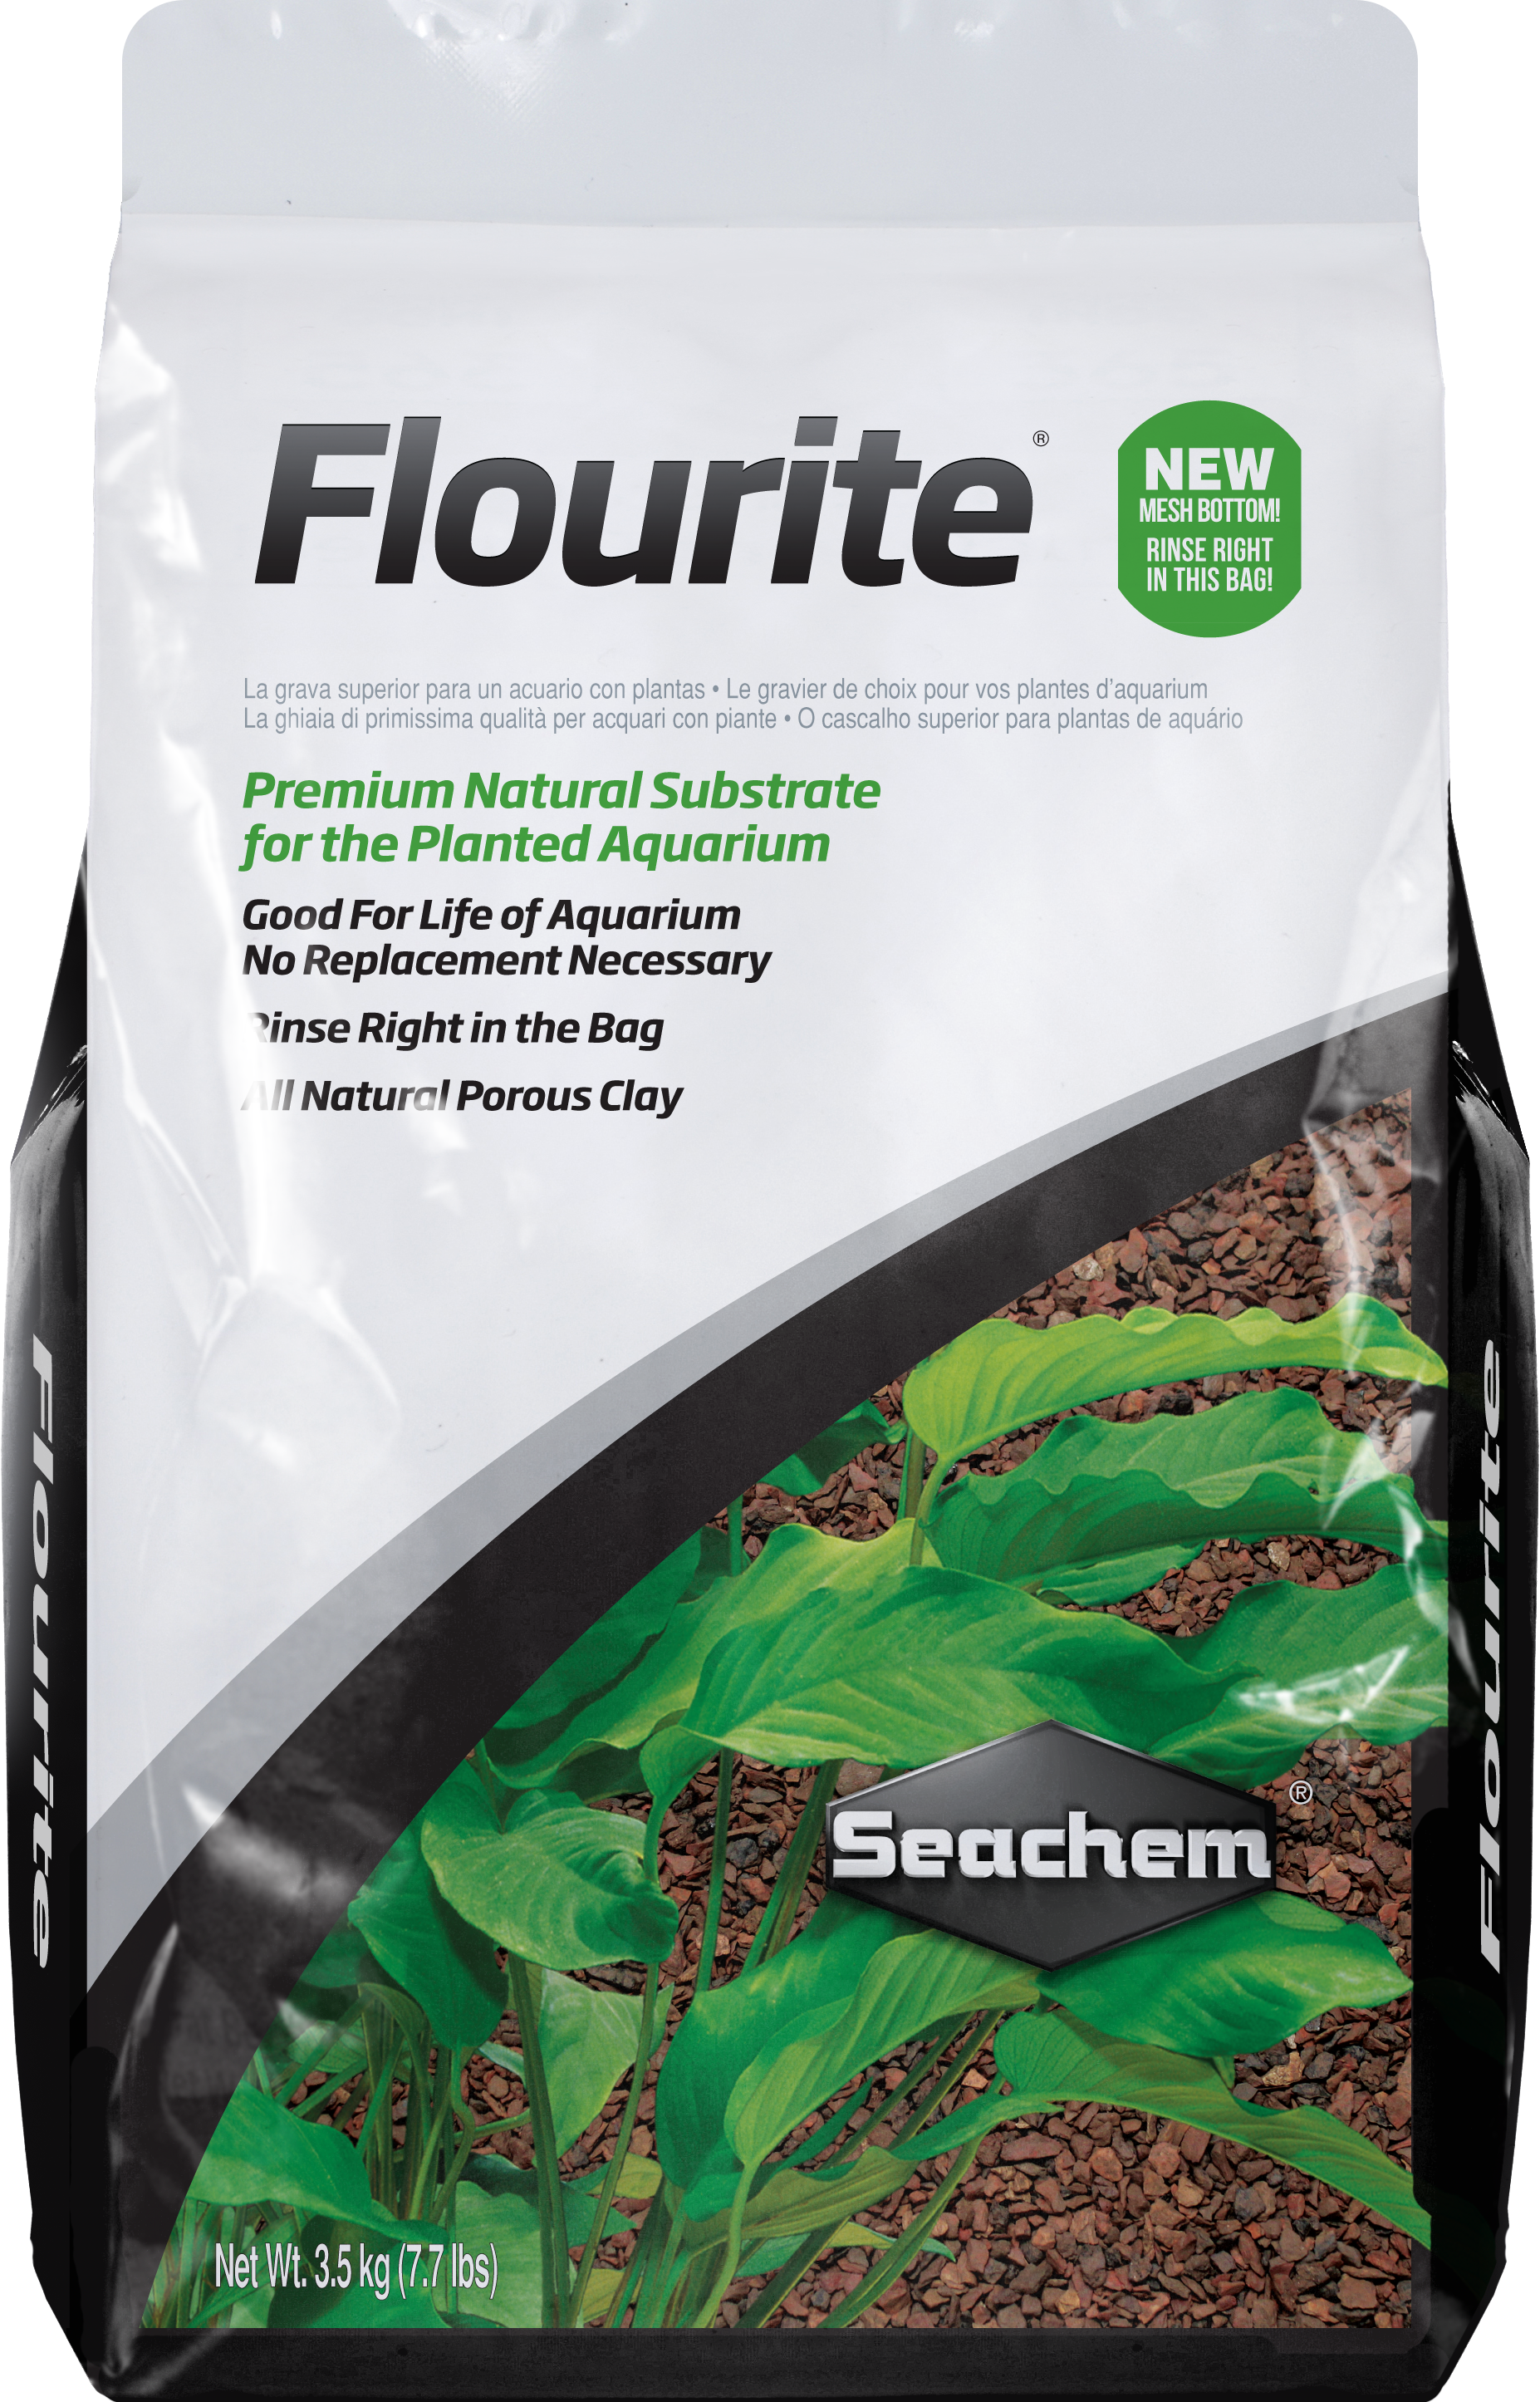 Flourite